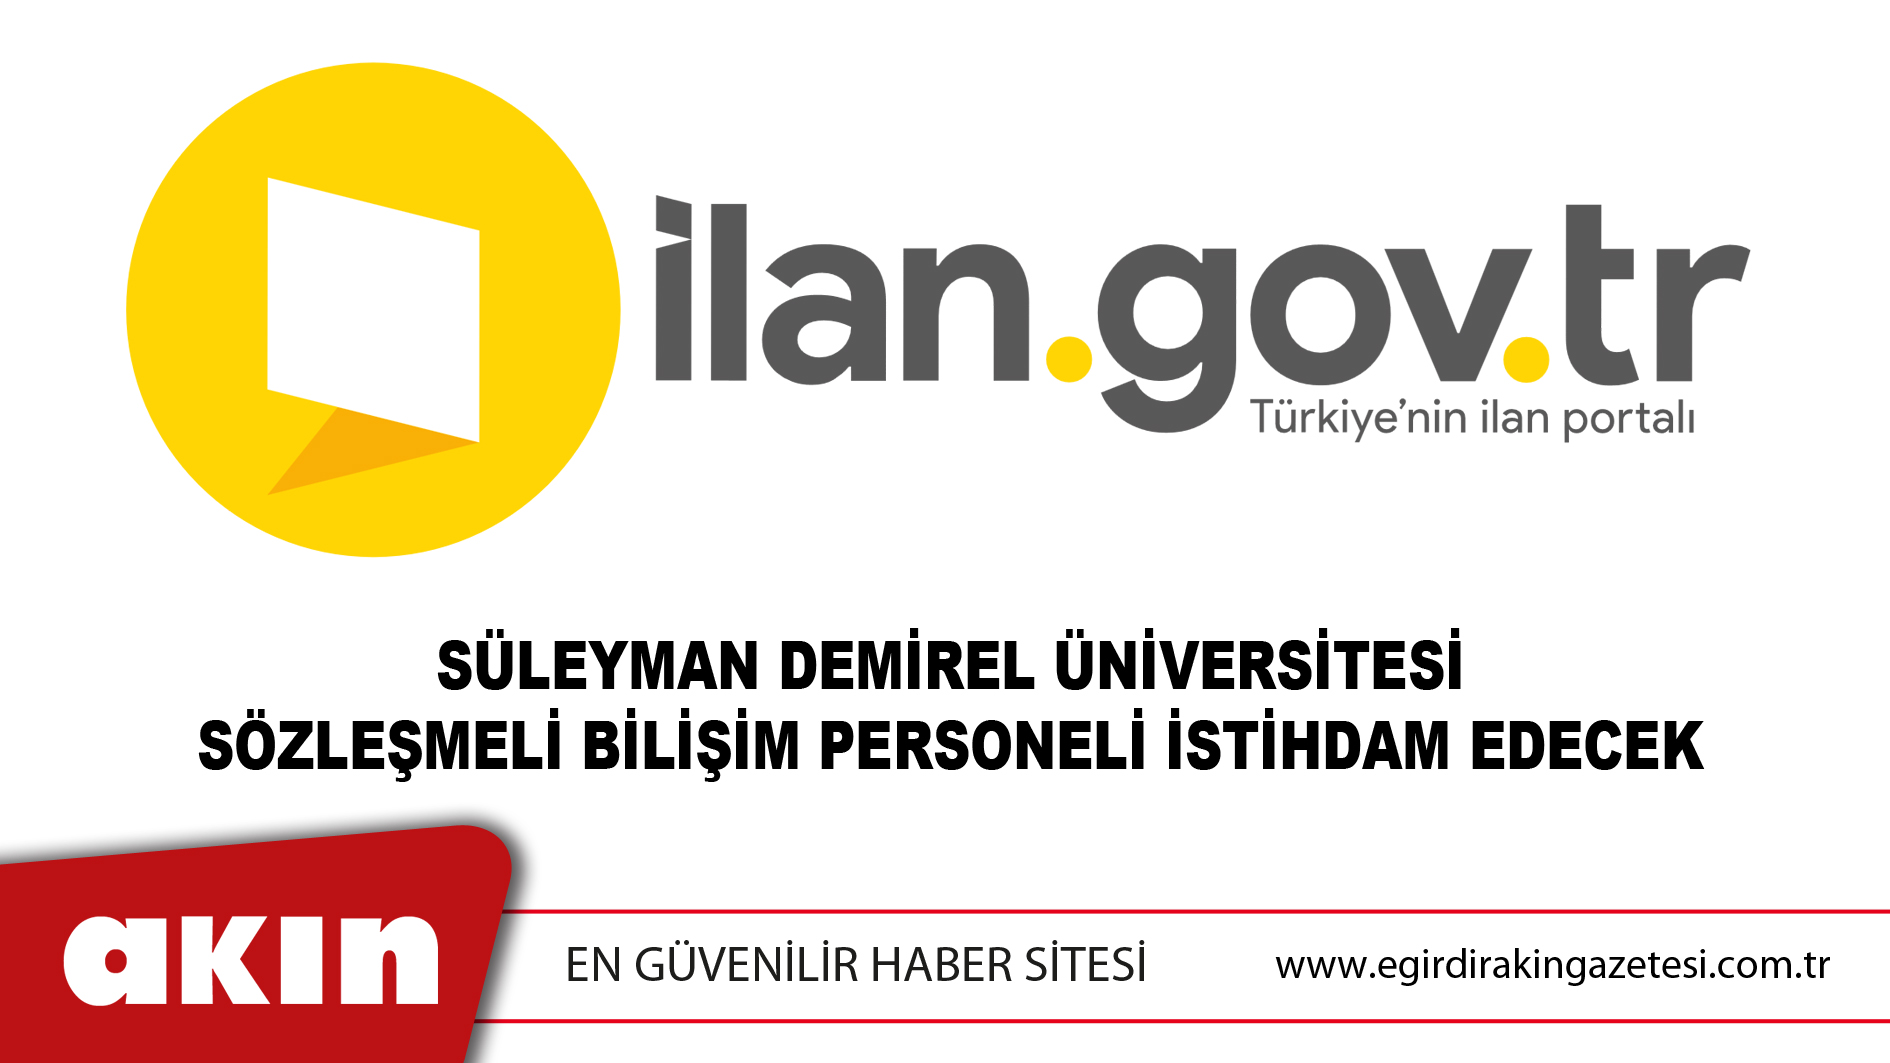 Süleyman Demirel Üniversitesi Sözleşmeli Bilişim Personeli İstihdam Edecek	